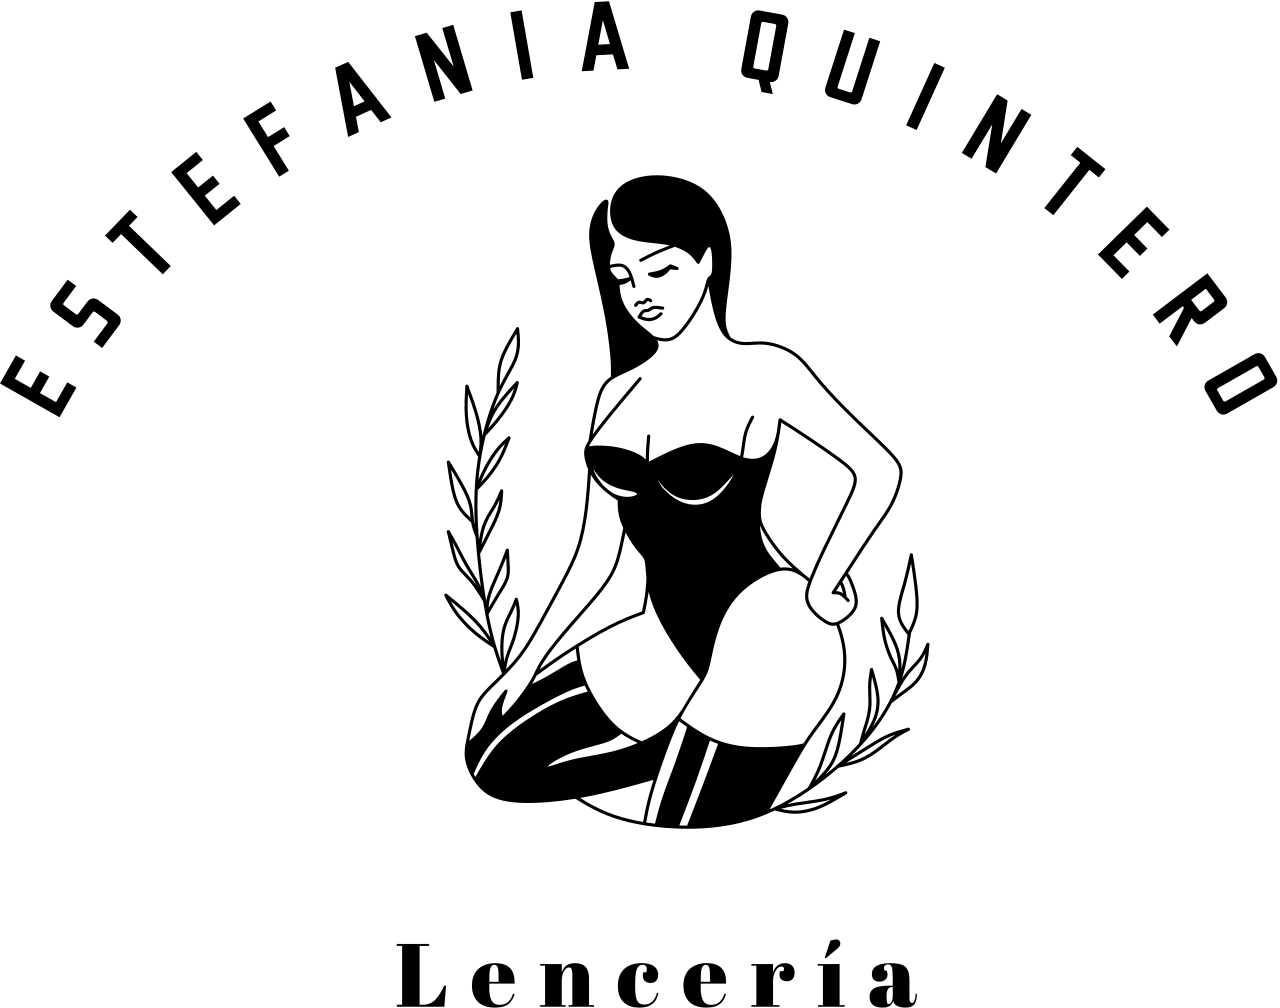 Estefania quintero's logo